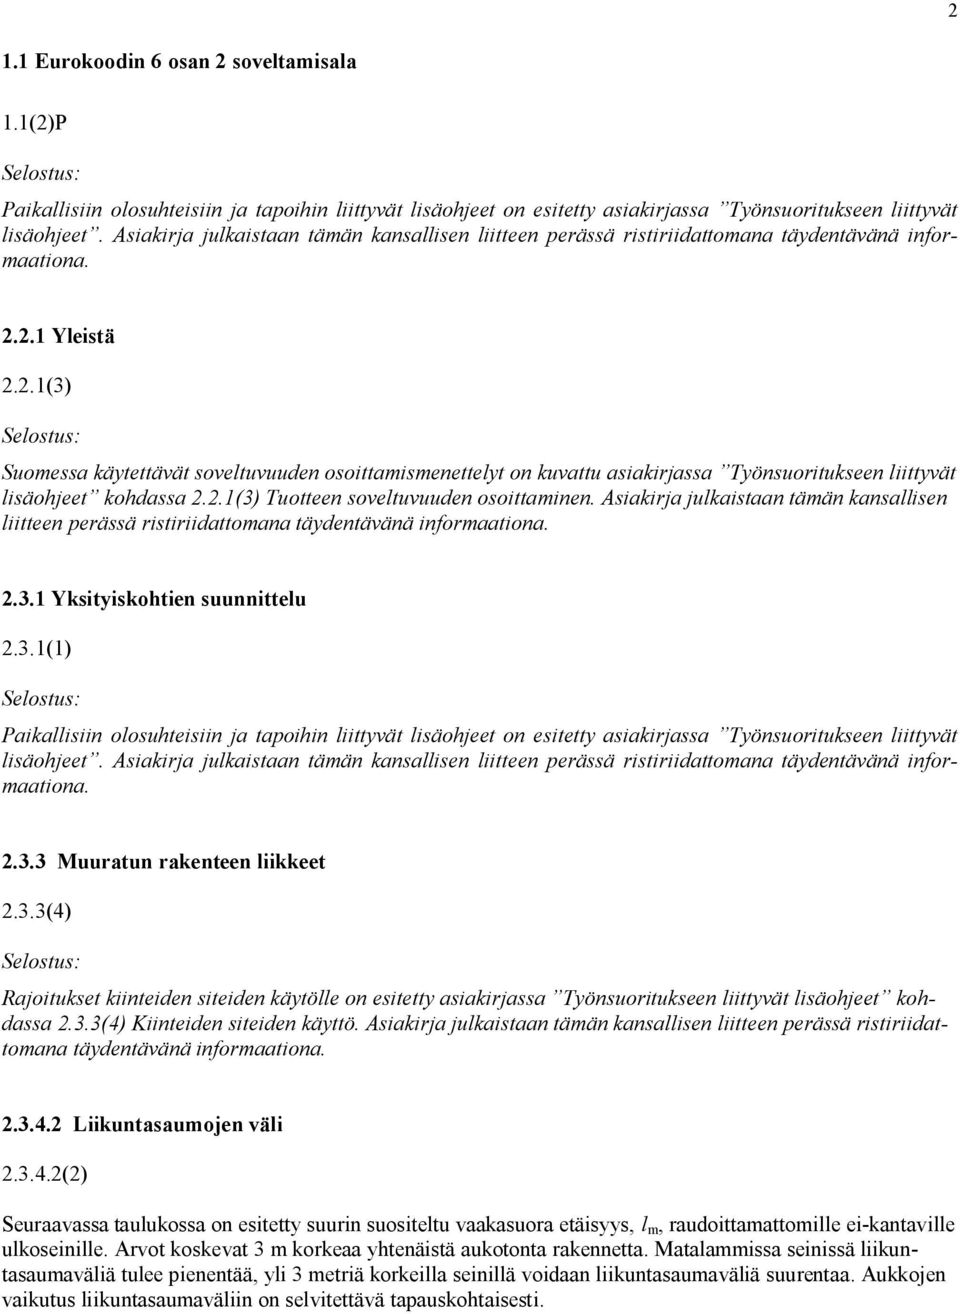 2.1 Yleistä 2.2.1(3) Suomessa käytettävät soveltuvuuden osoittamismenettelyt on kuvattu asiakirjassa Työnsuoritukseen liittyvät lisäohjeet kohdassa 2.2.1(3) Tuotteen soveltuvuuden osoittaminen. 3.